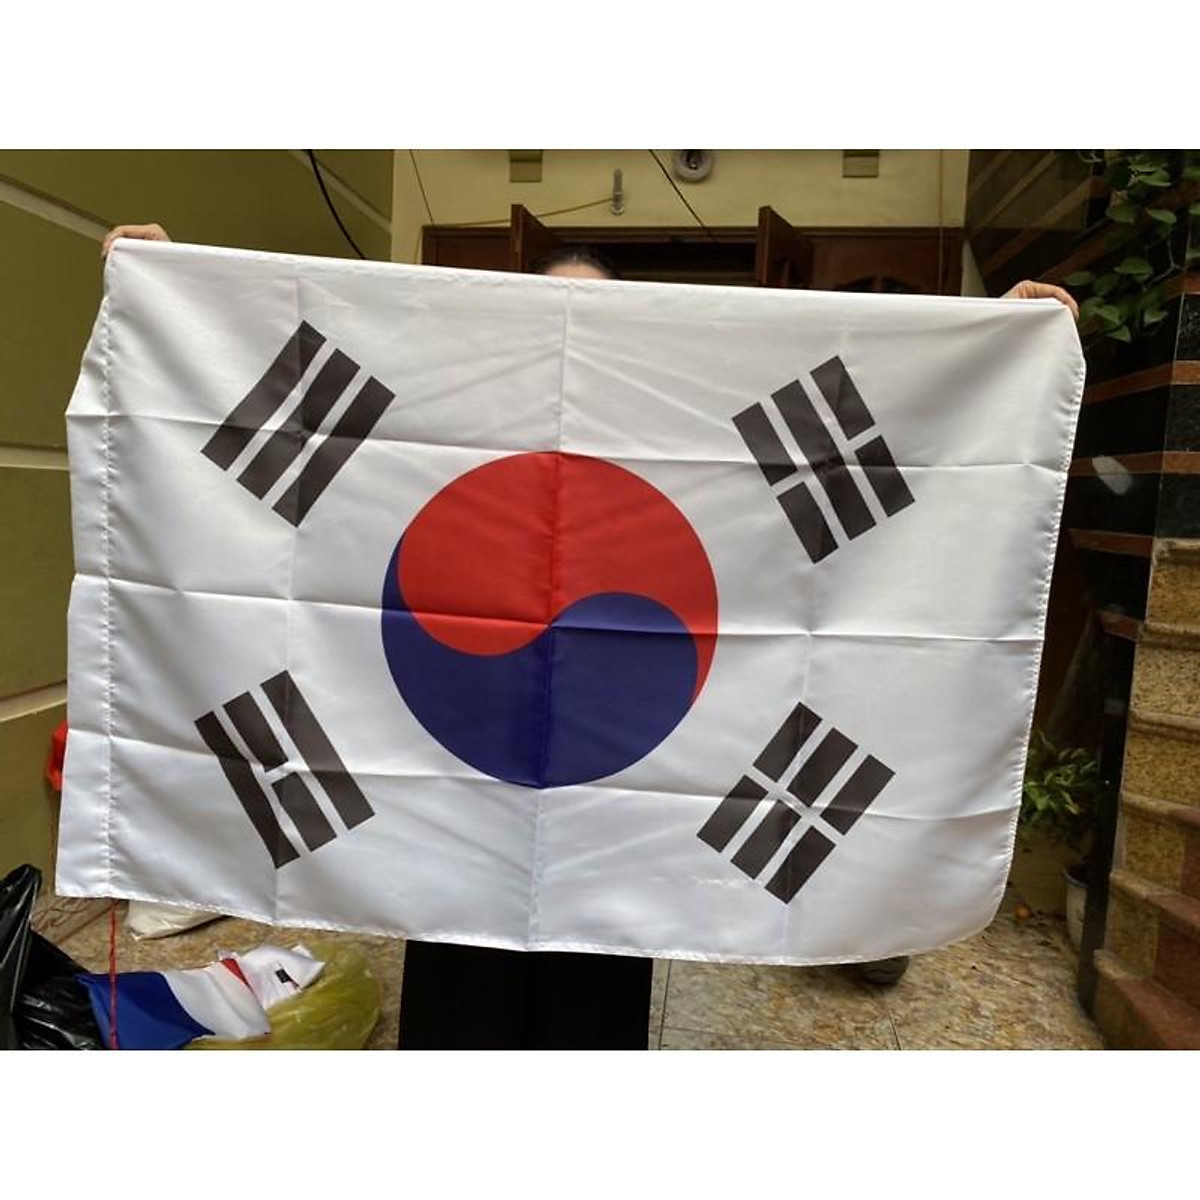 Cờ Hàn Quốc, cờ các nước, cờ in theo yêu cầu - Trang trí nhà cửa khác